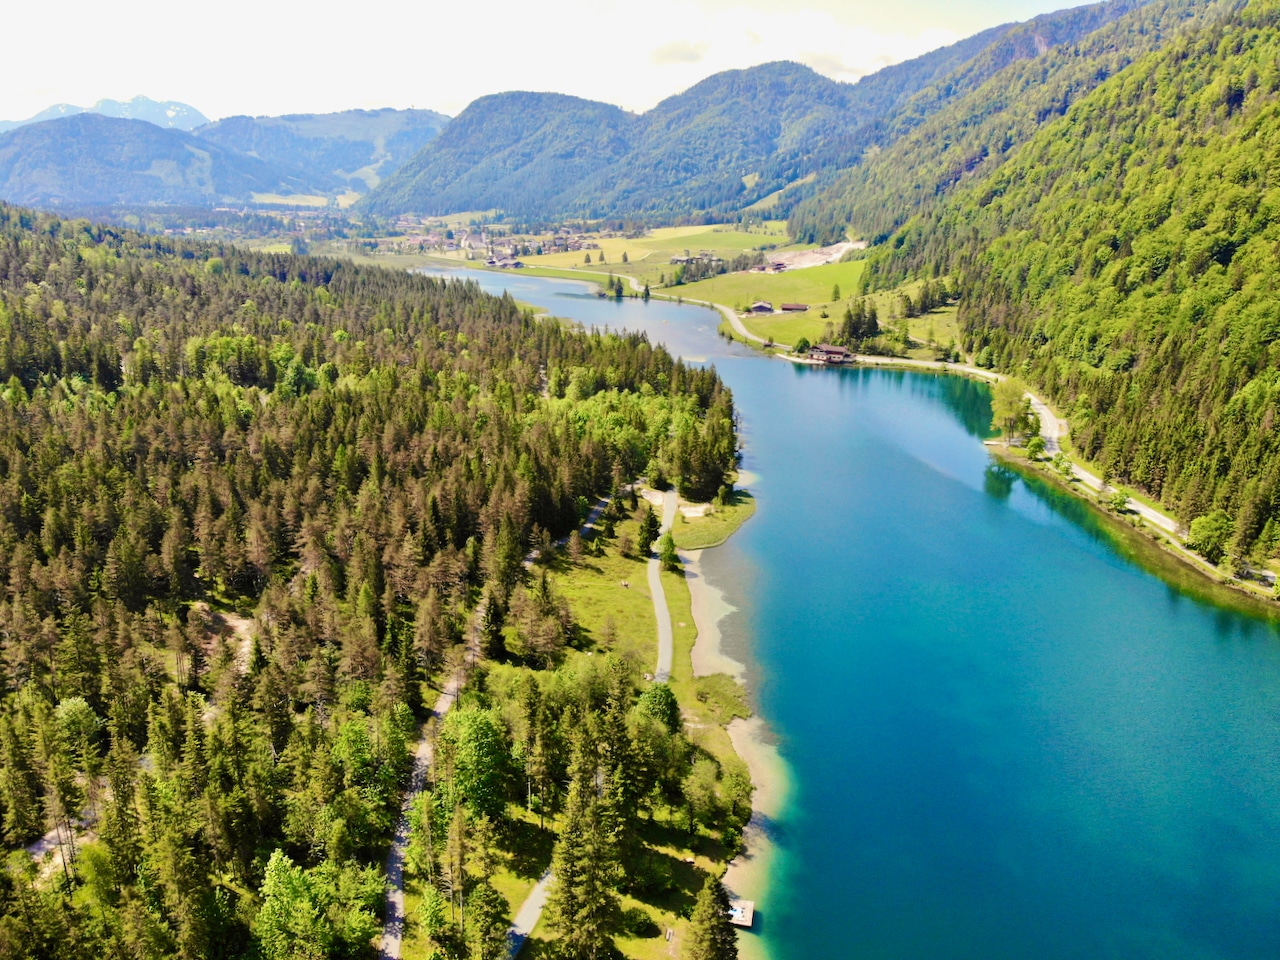 Il lago di montagna di circa 24 ettari, che si trova nell'affascinante Pillerseetal vicino al comune di St. Ulrich am Pillersee a un'altitudine di 835 metri, è una vera attrazione sia per la gente del posto che per i visitatori.